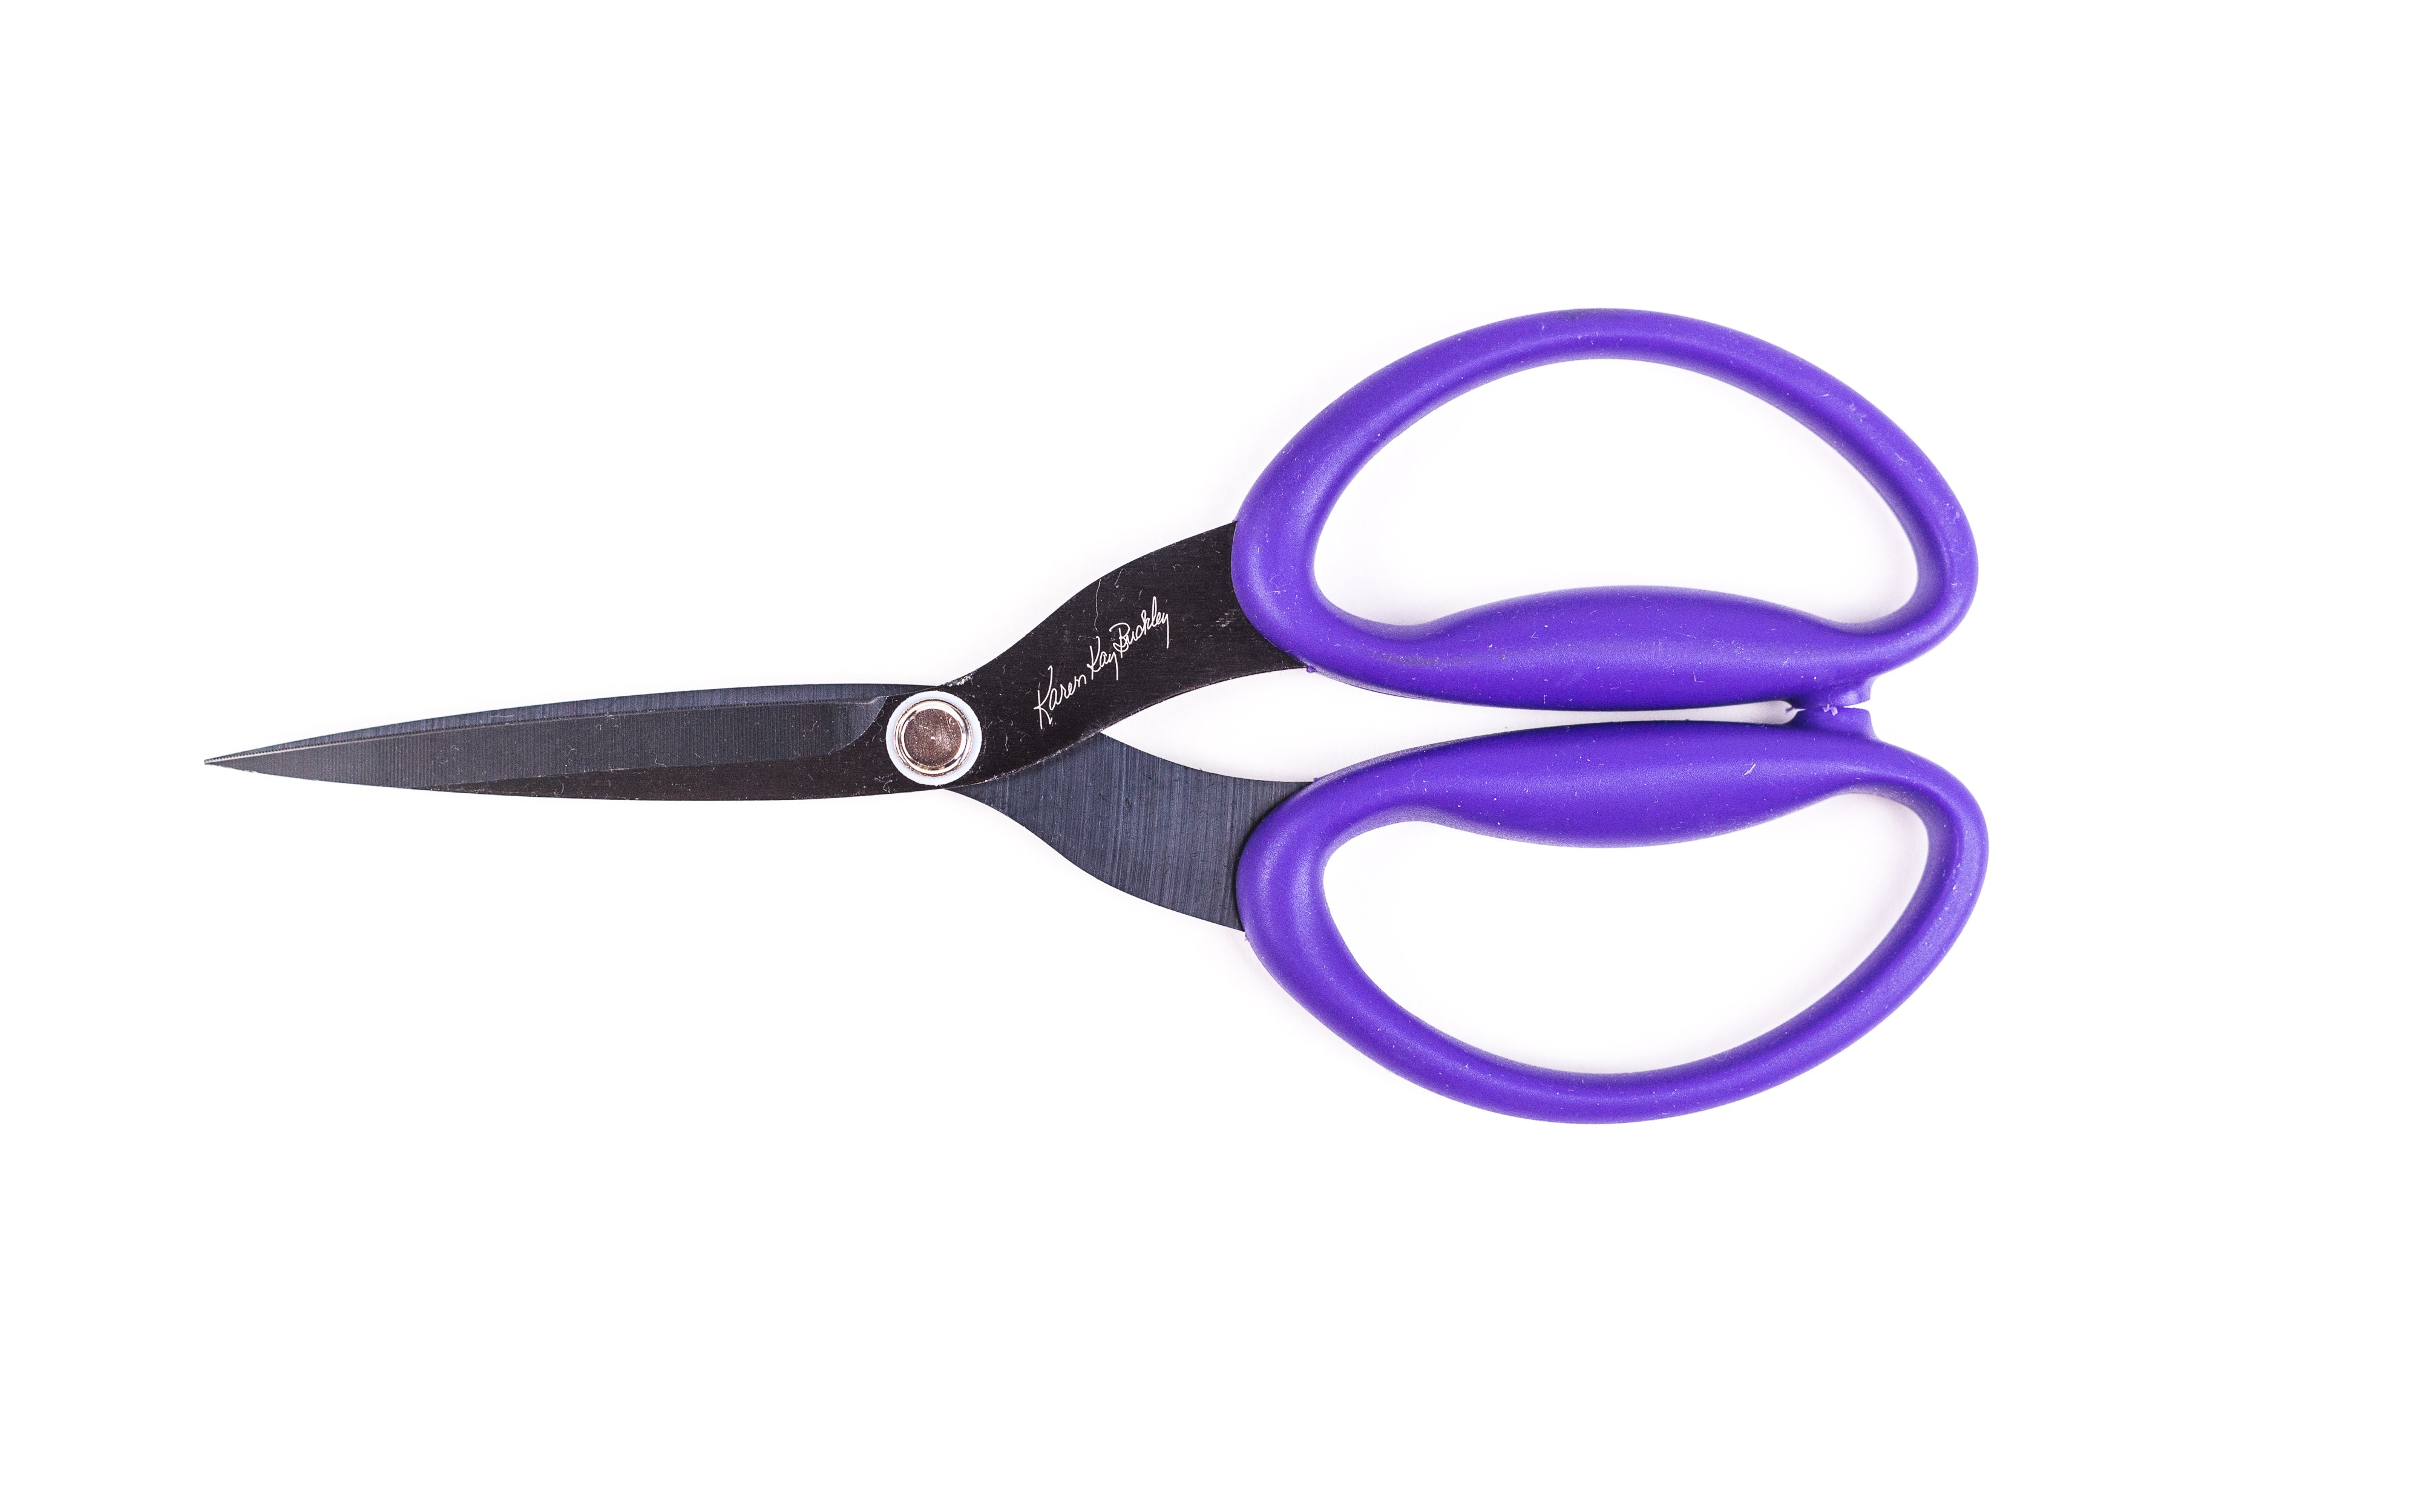 Karen Kay Buckley's Perfect Scissors